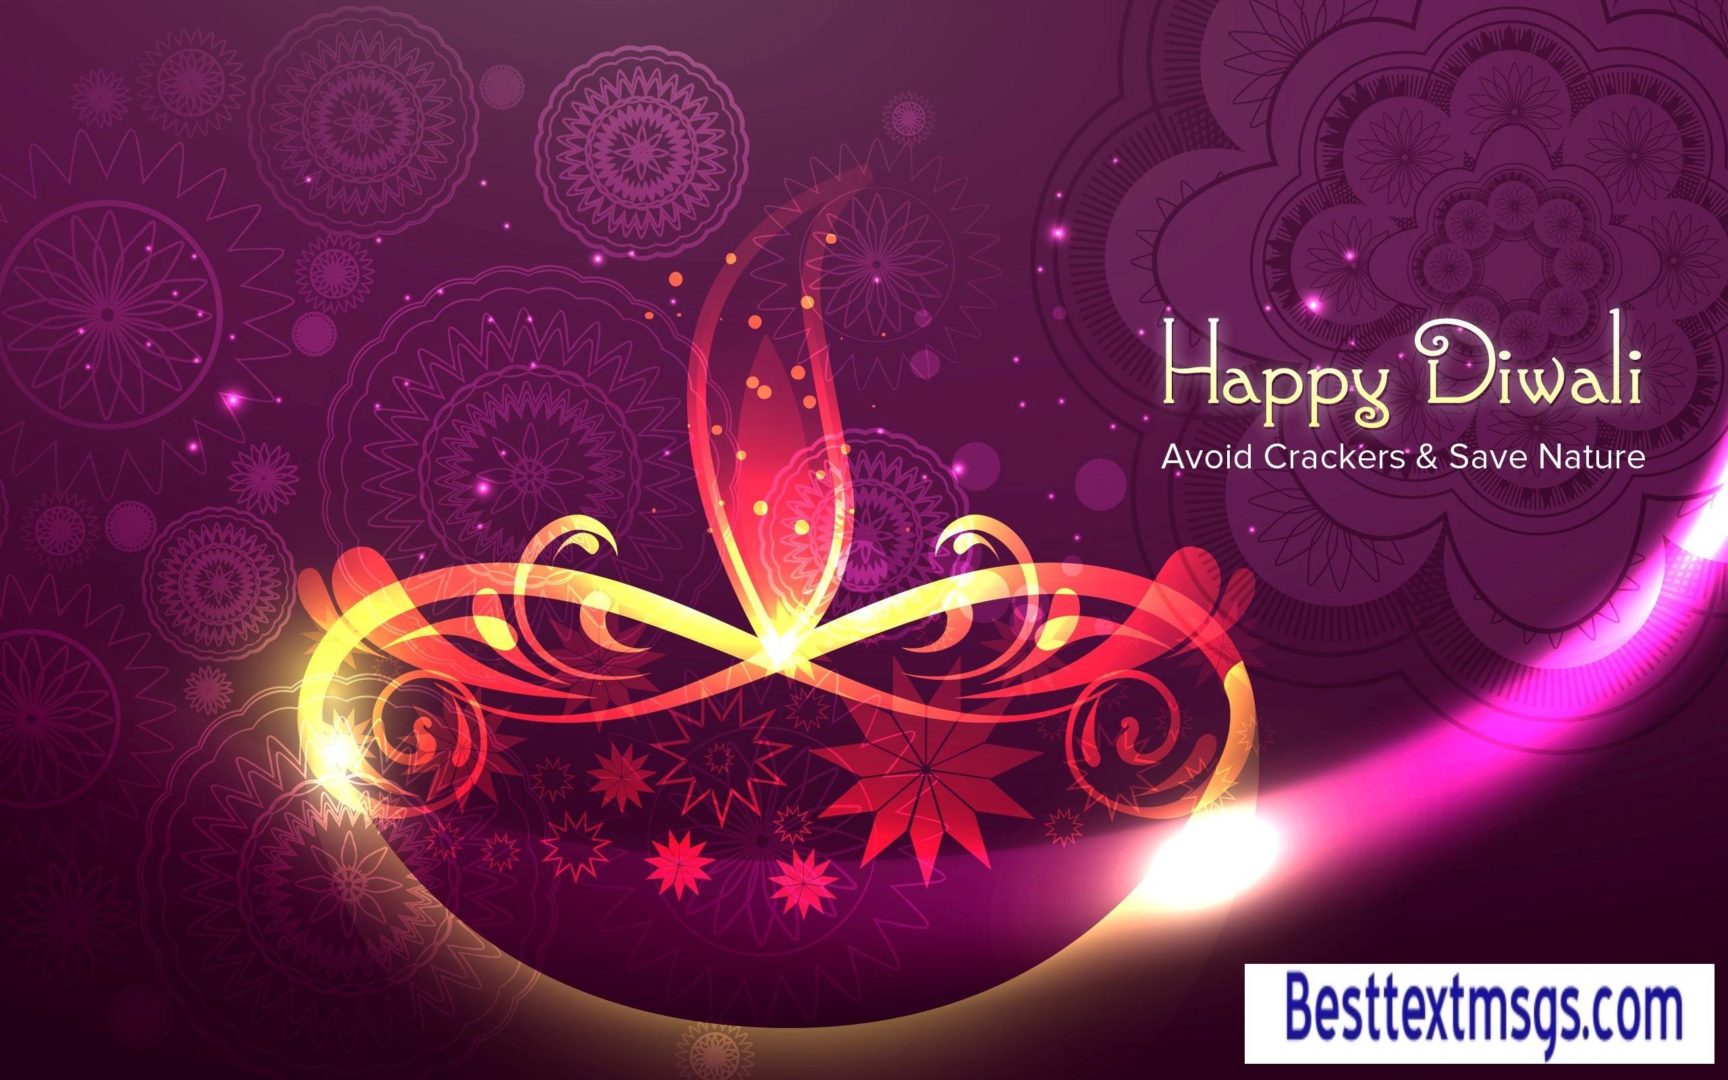 Happy Diwali Images Unique , HD Wallpaper & Backgrounds